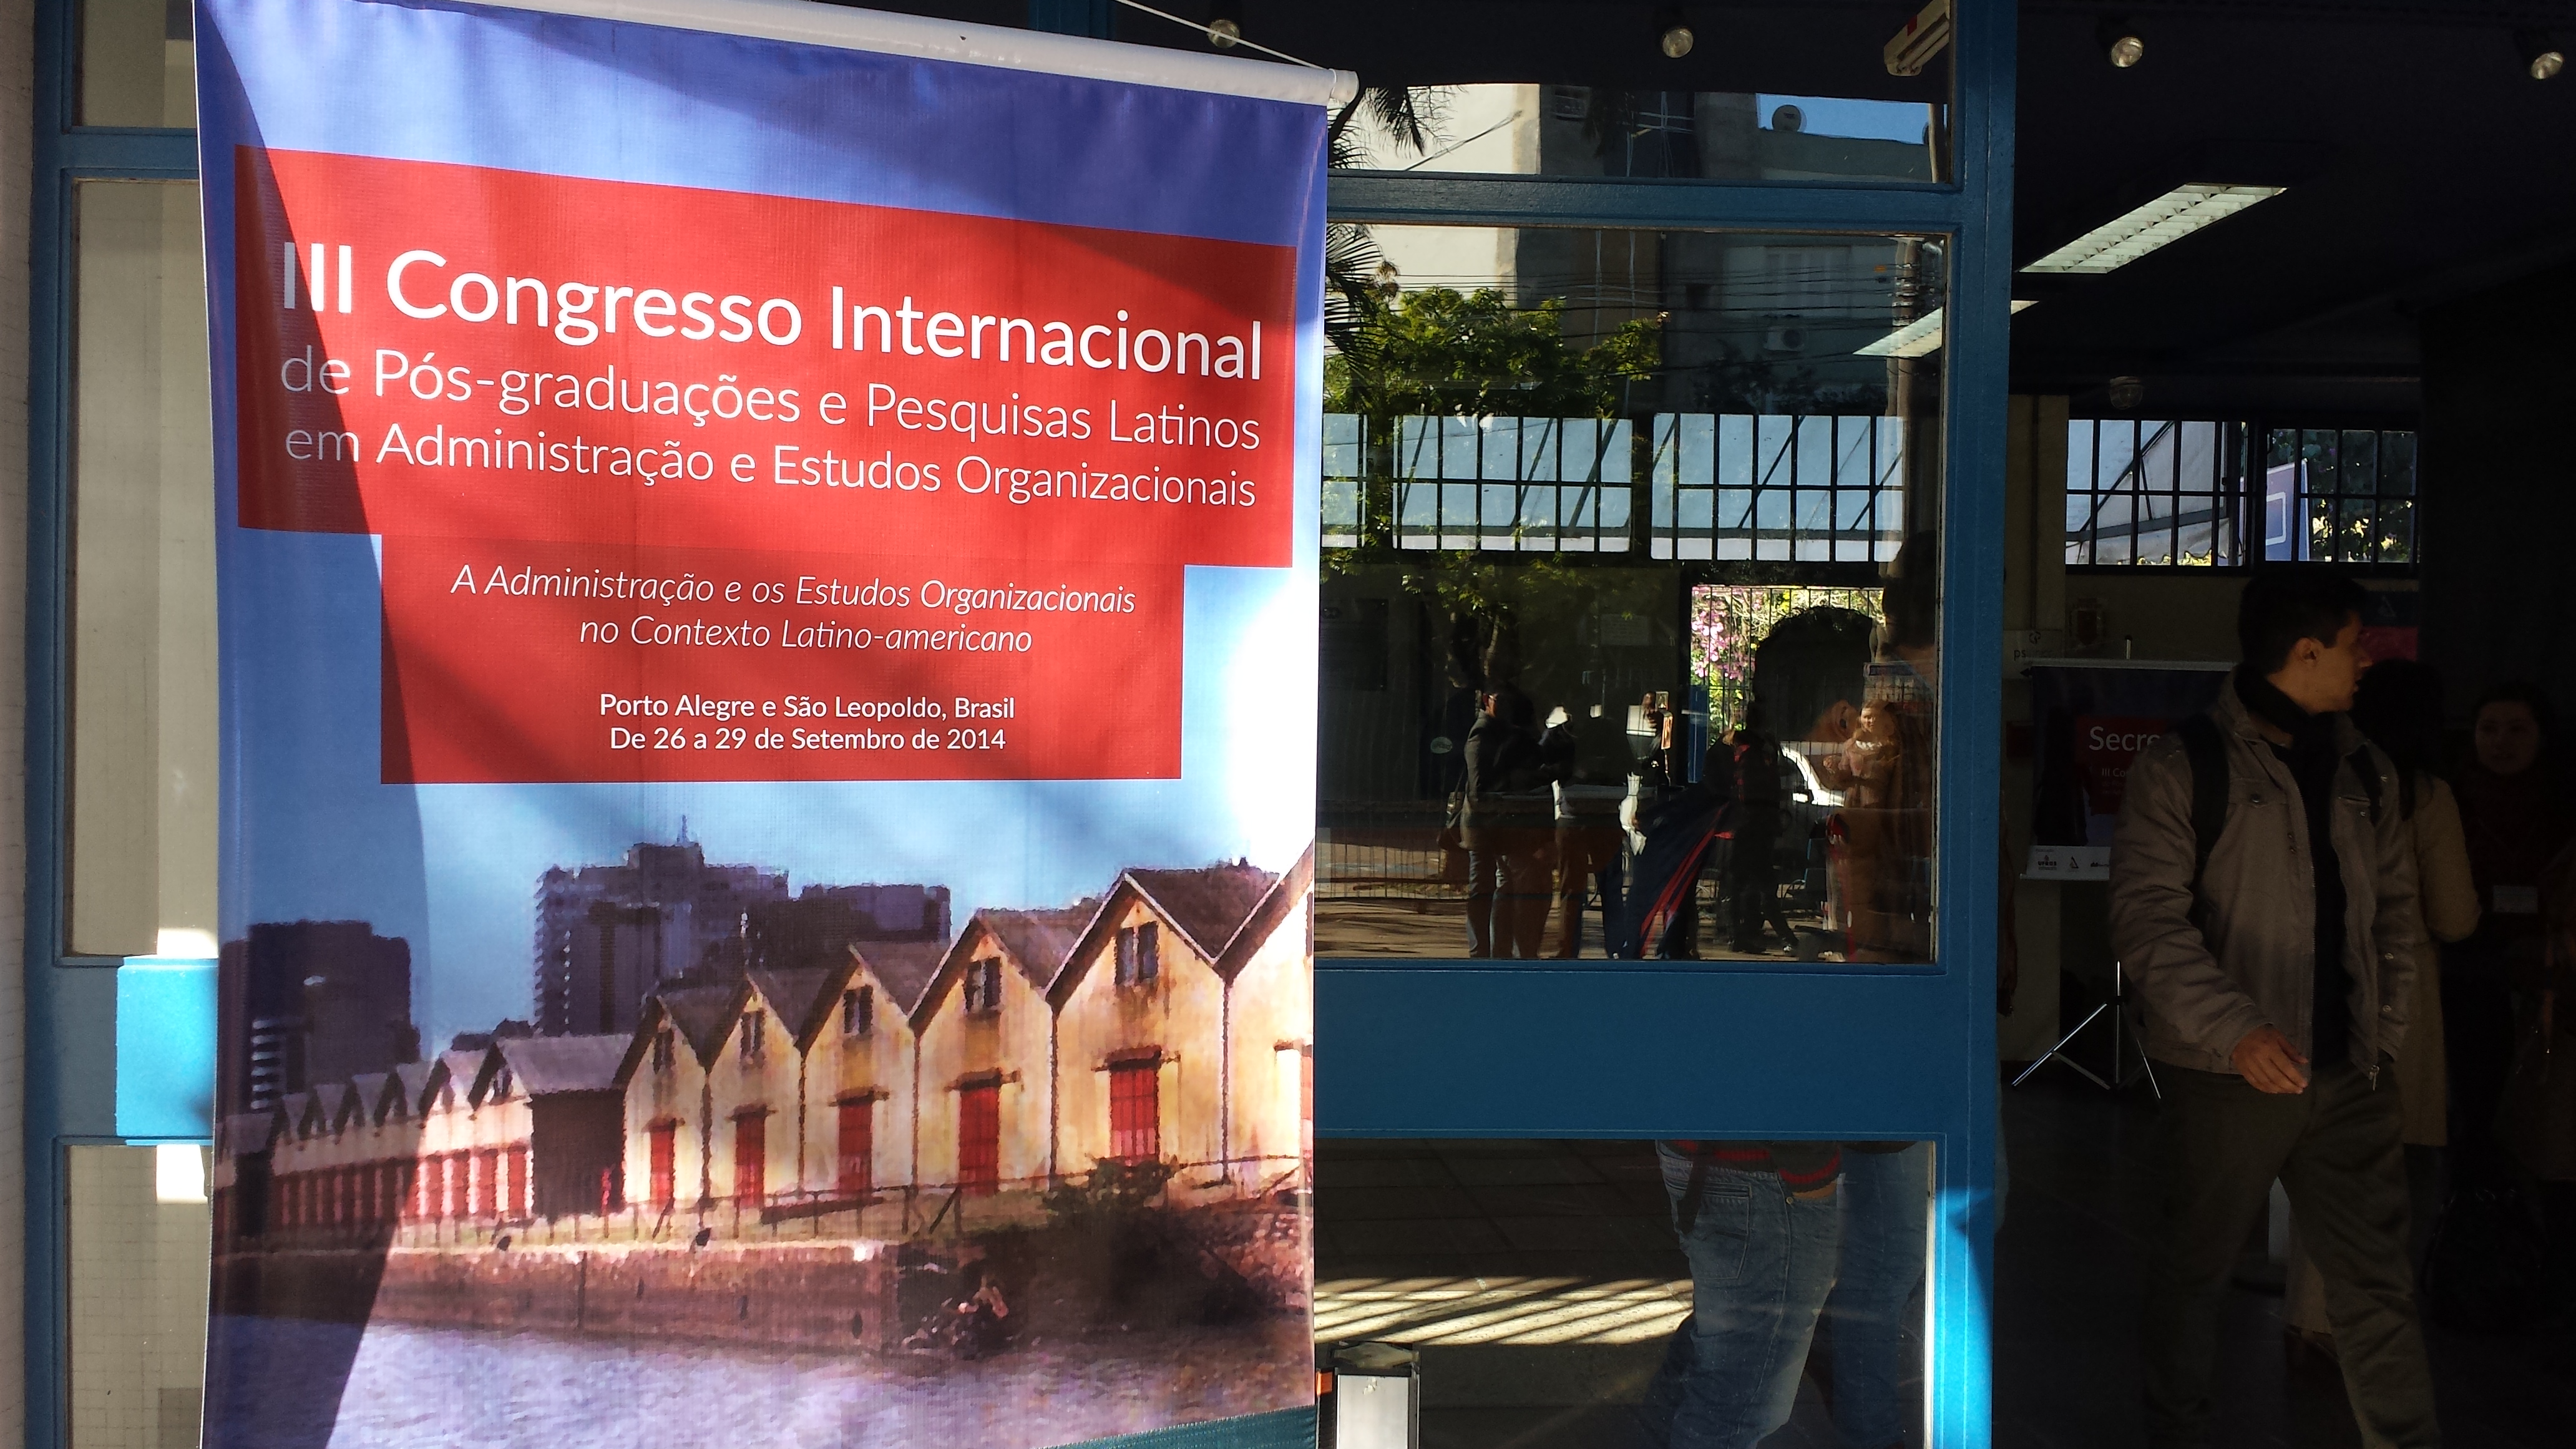 Professor participa de congresso internacional no Rio Grande do Sul